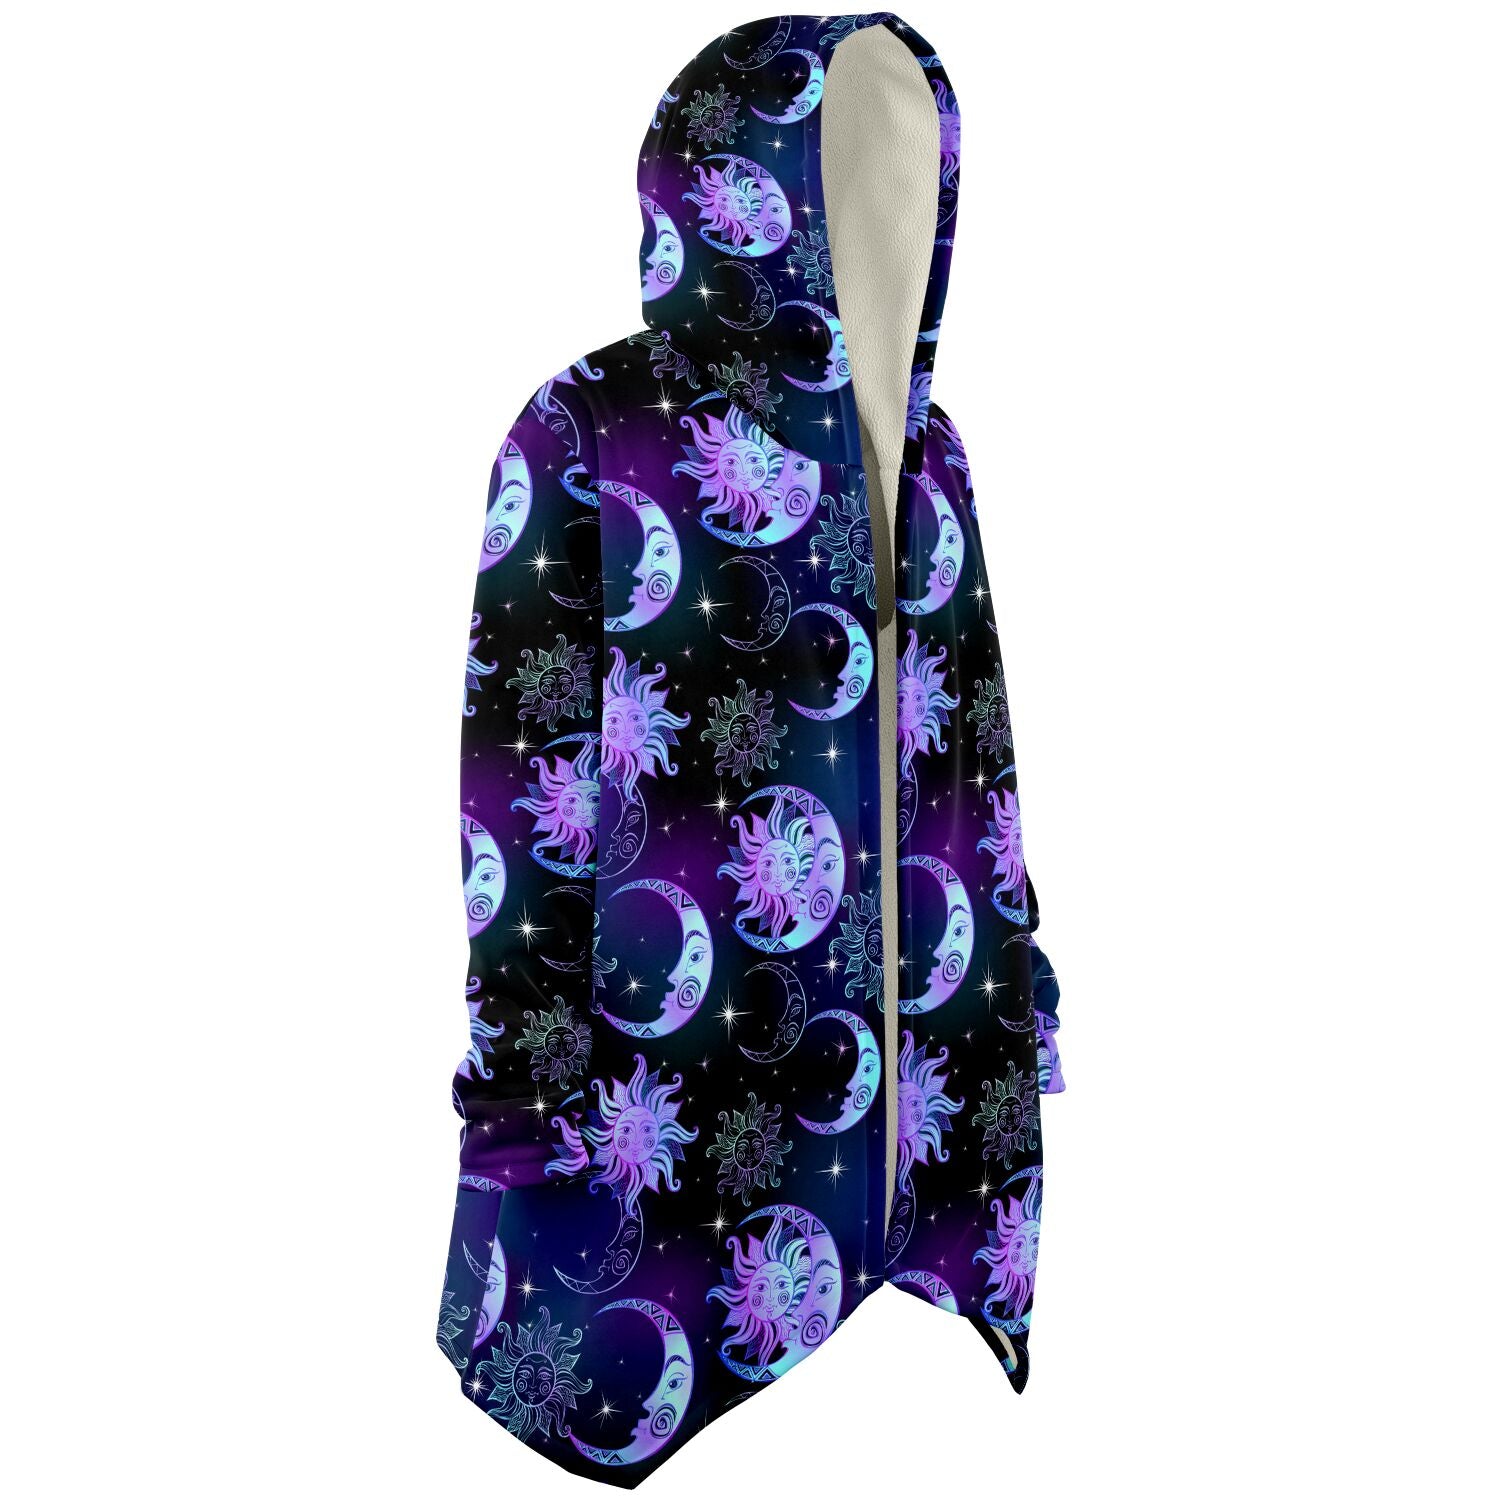 Sun Moon Hooded Cloak, Stars Purple Celestial Space Men Women Modern Winter Warm Mink Blanket with Pockets Starcove Fashion